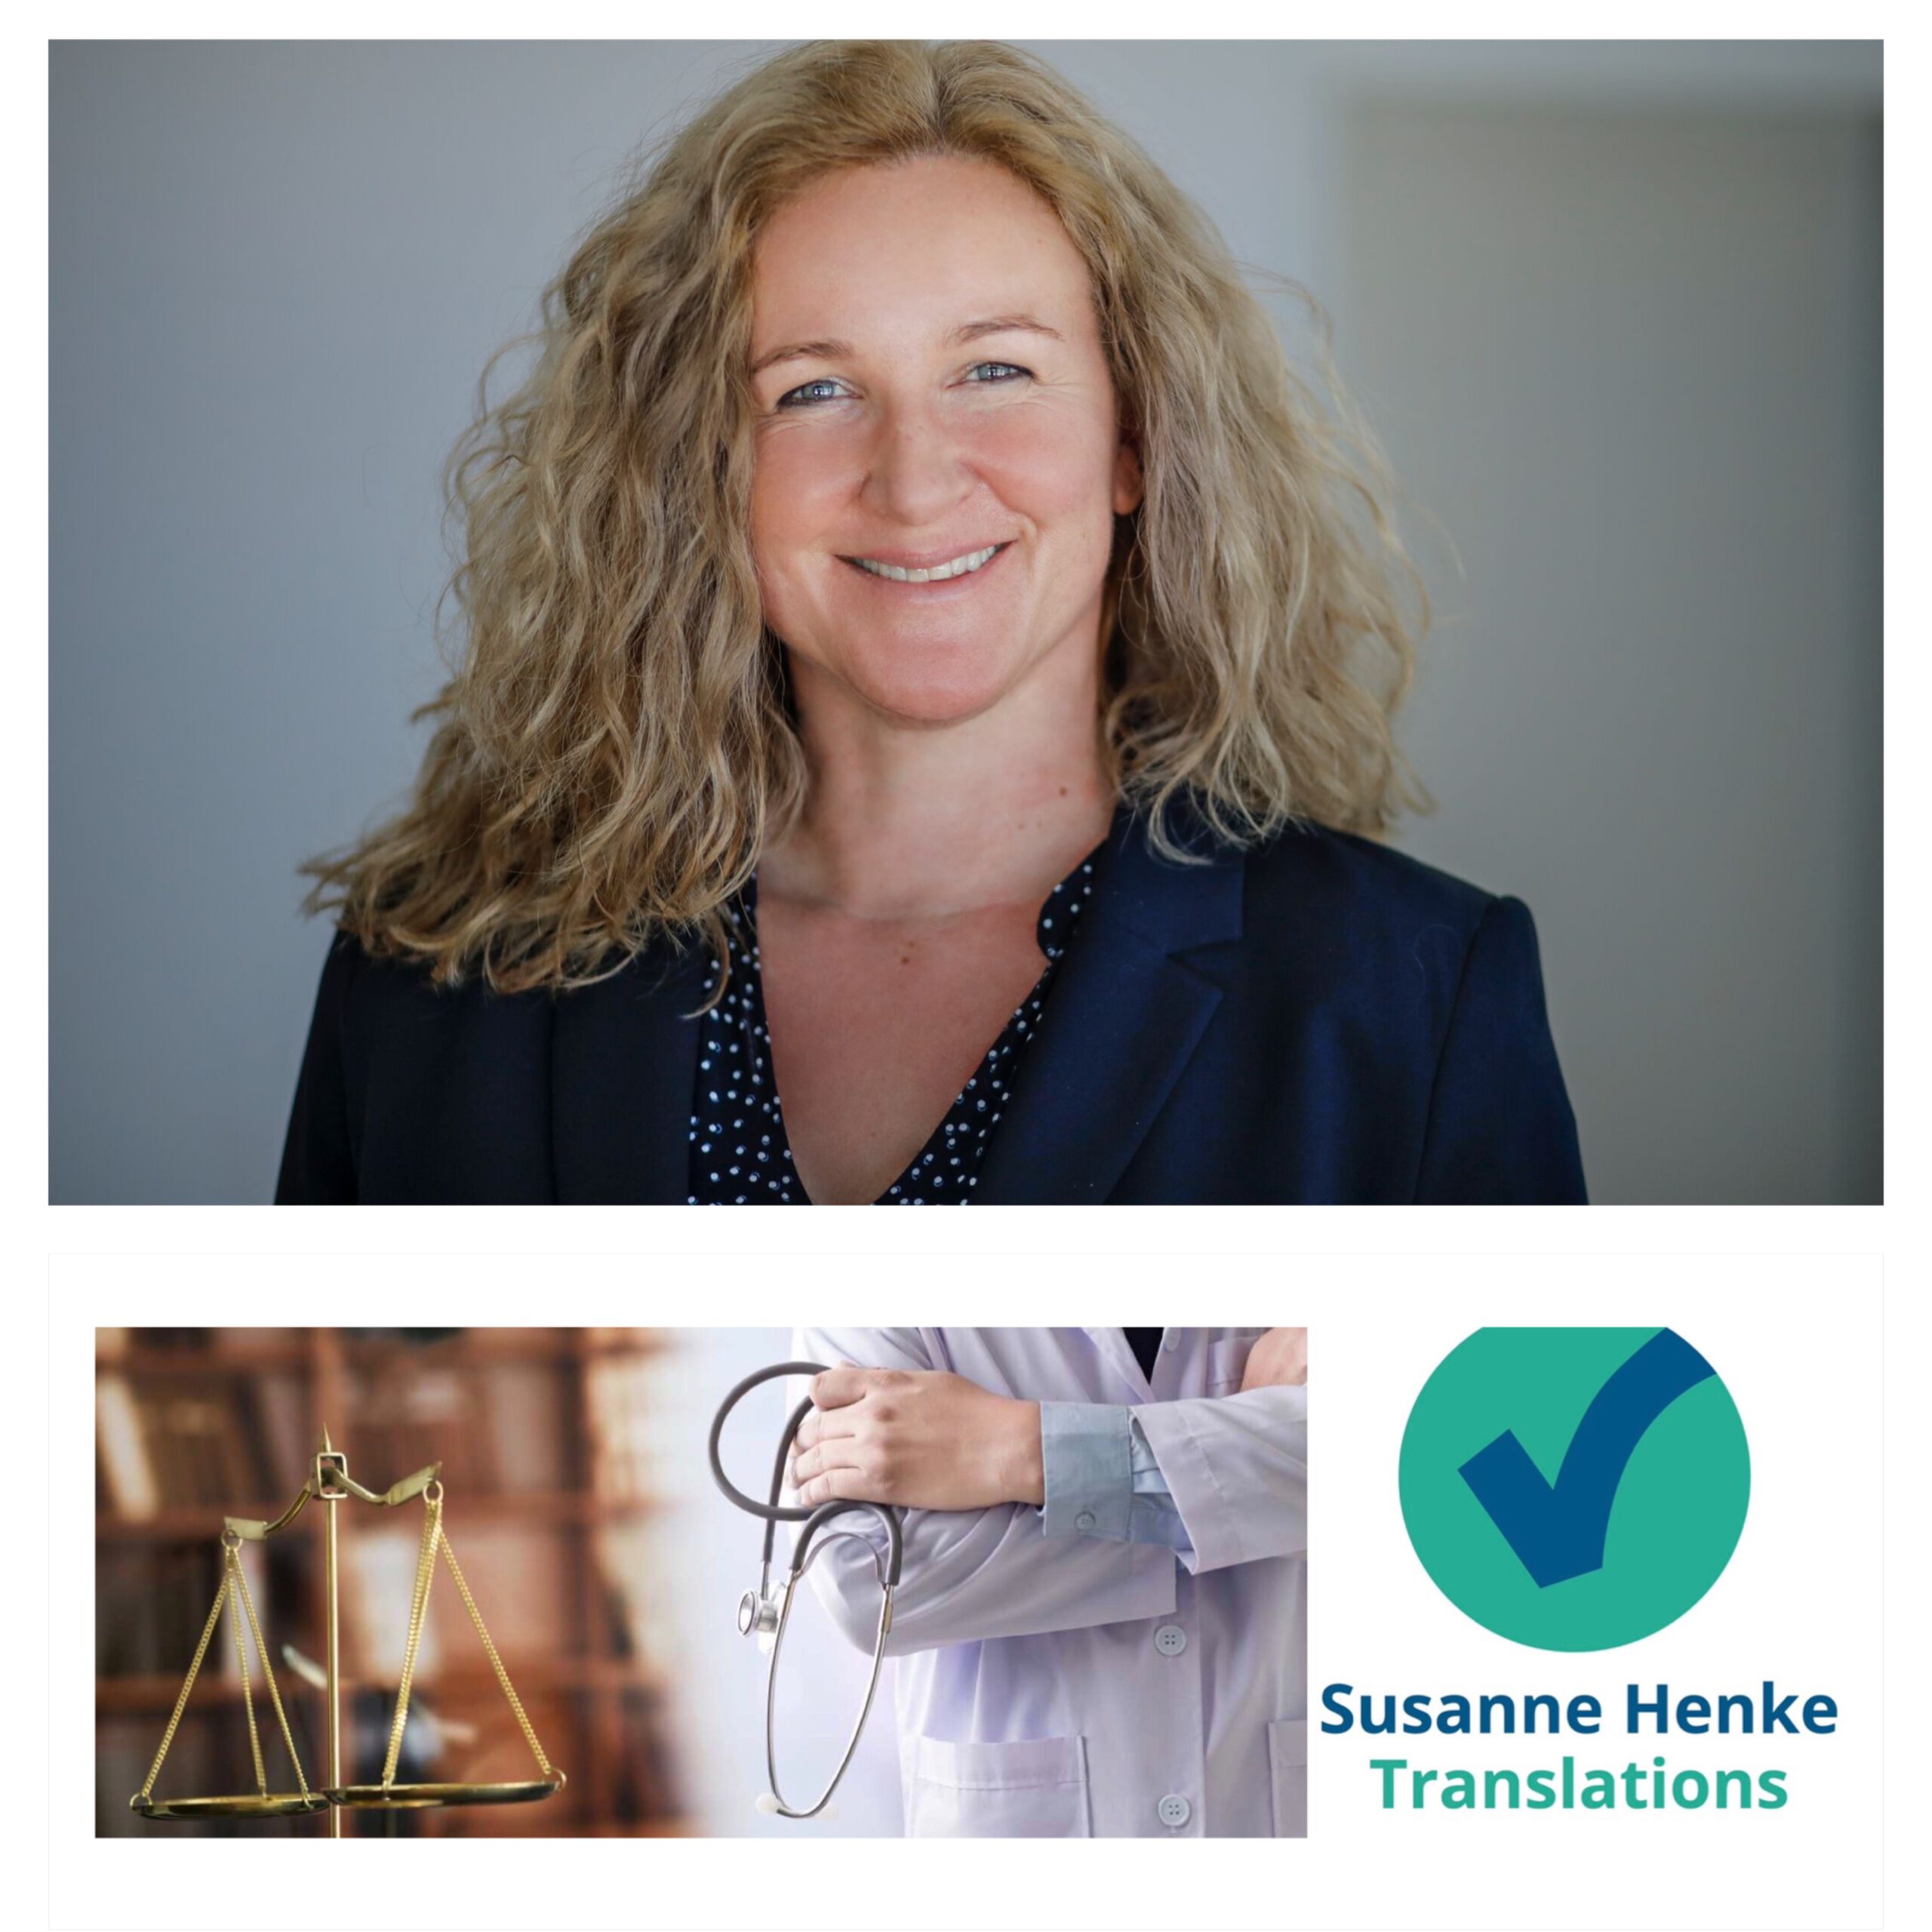 Susanne Henke, German medical and legal translator